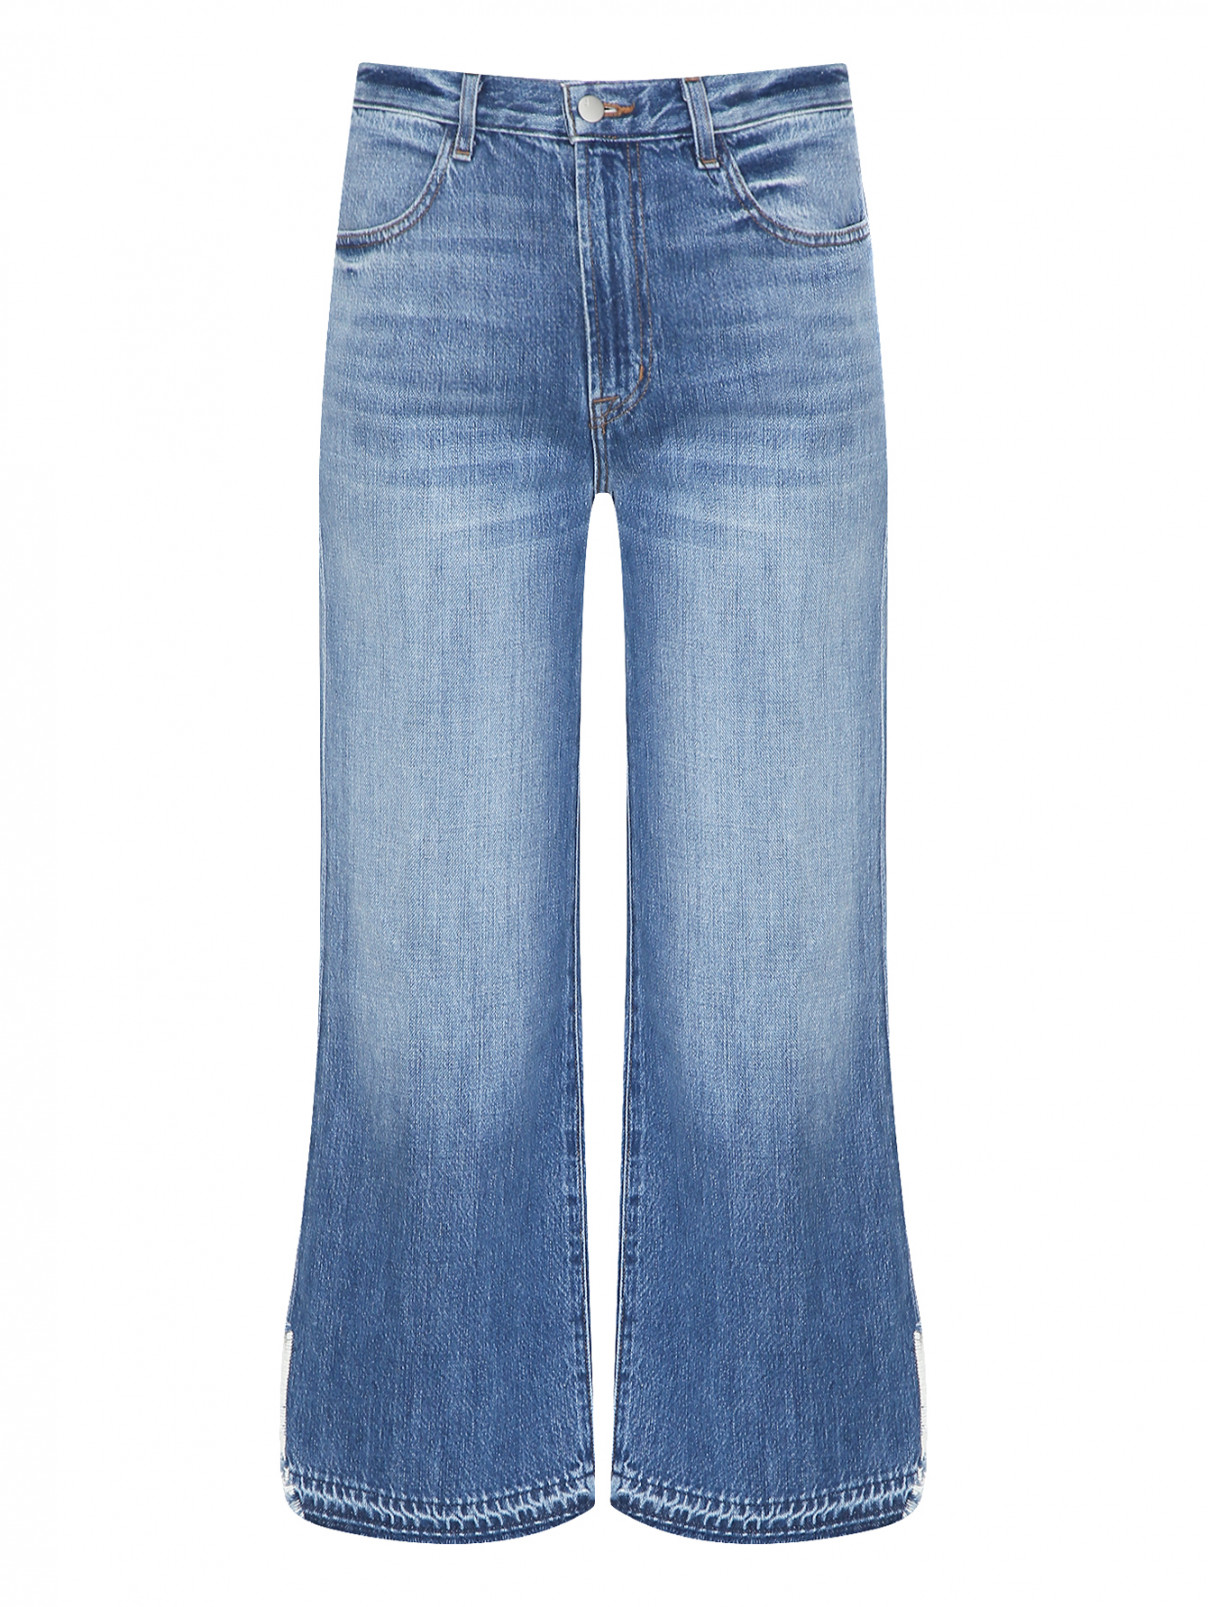 Укороченные джинсы с бахромой J Brand  –  Общий вид  – Цвет:  Синий